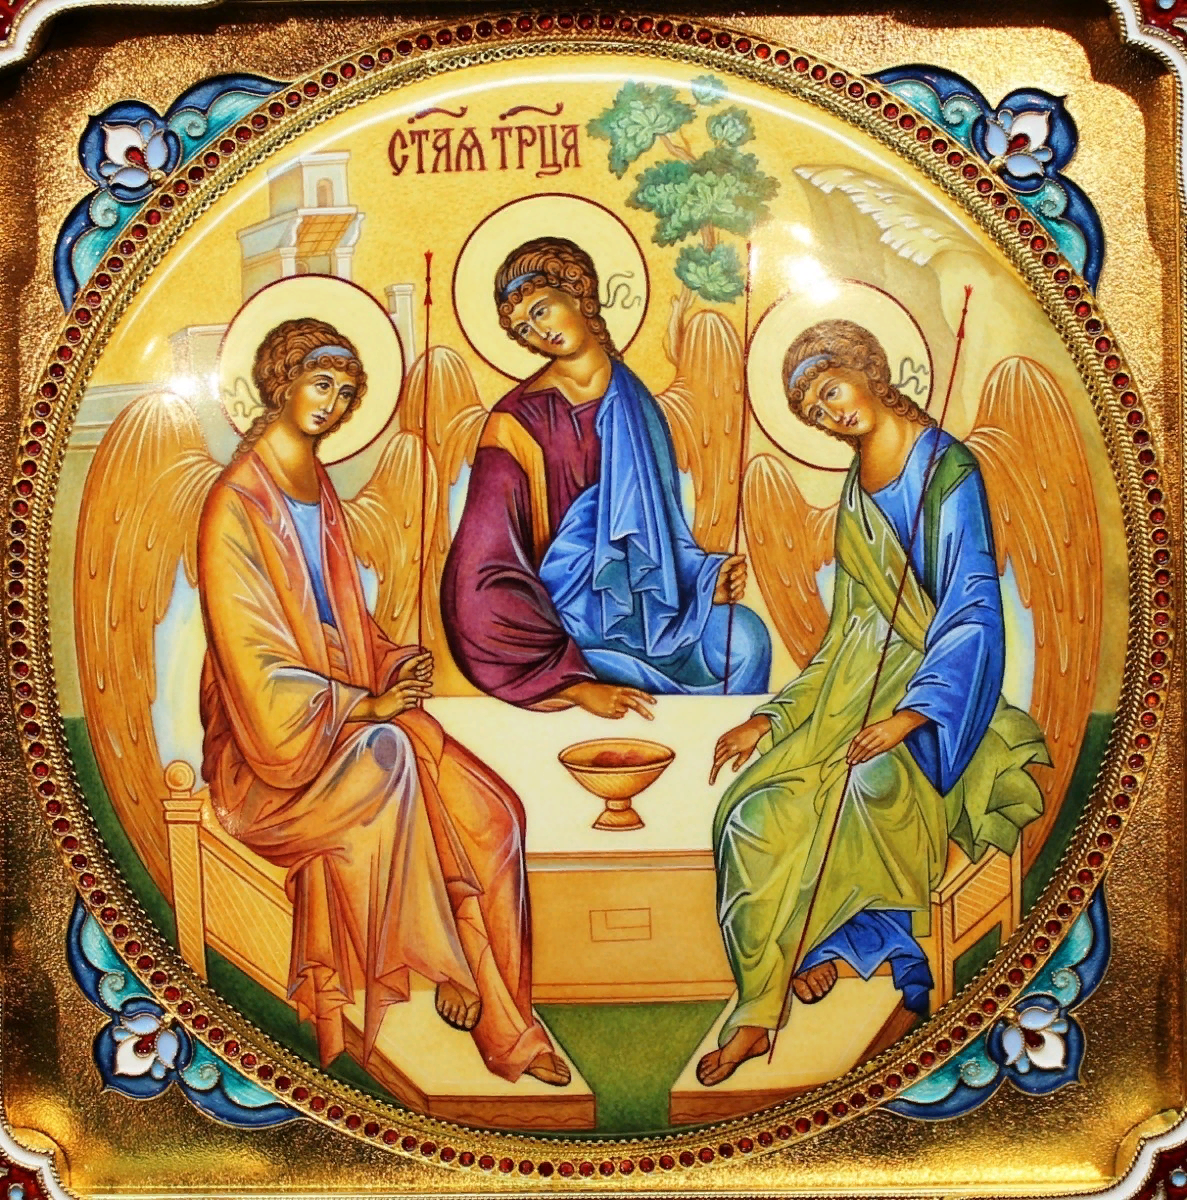 Господь Бог дает Милость Свою каждому человеку. Почему же важно и нужно молиться Святой Троице? Бог Триедин: Отец, Сын и Дух Святой.